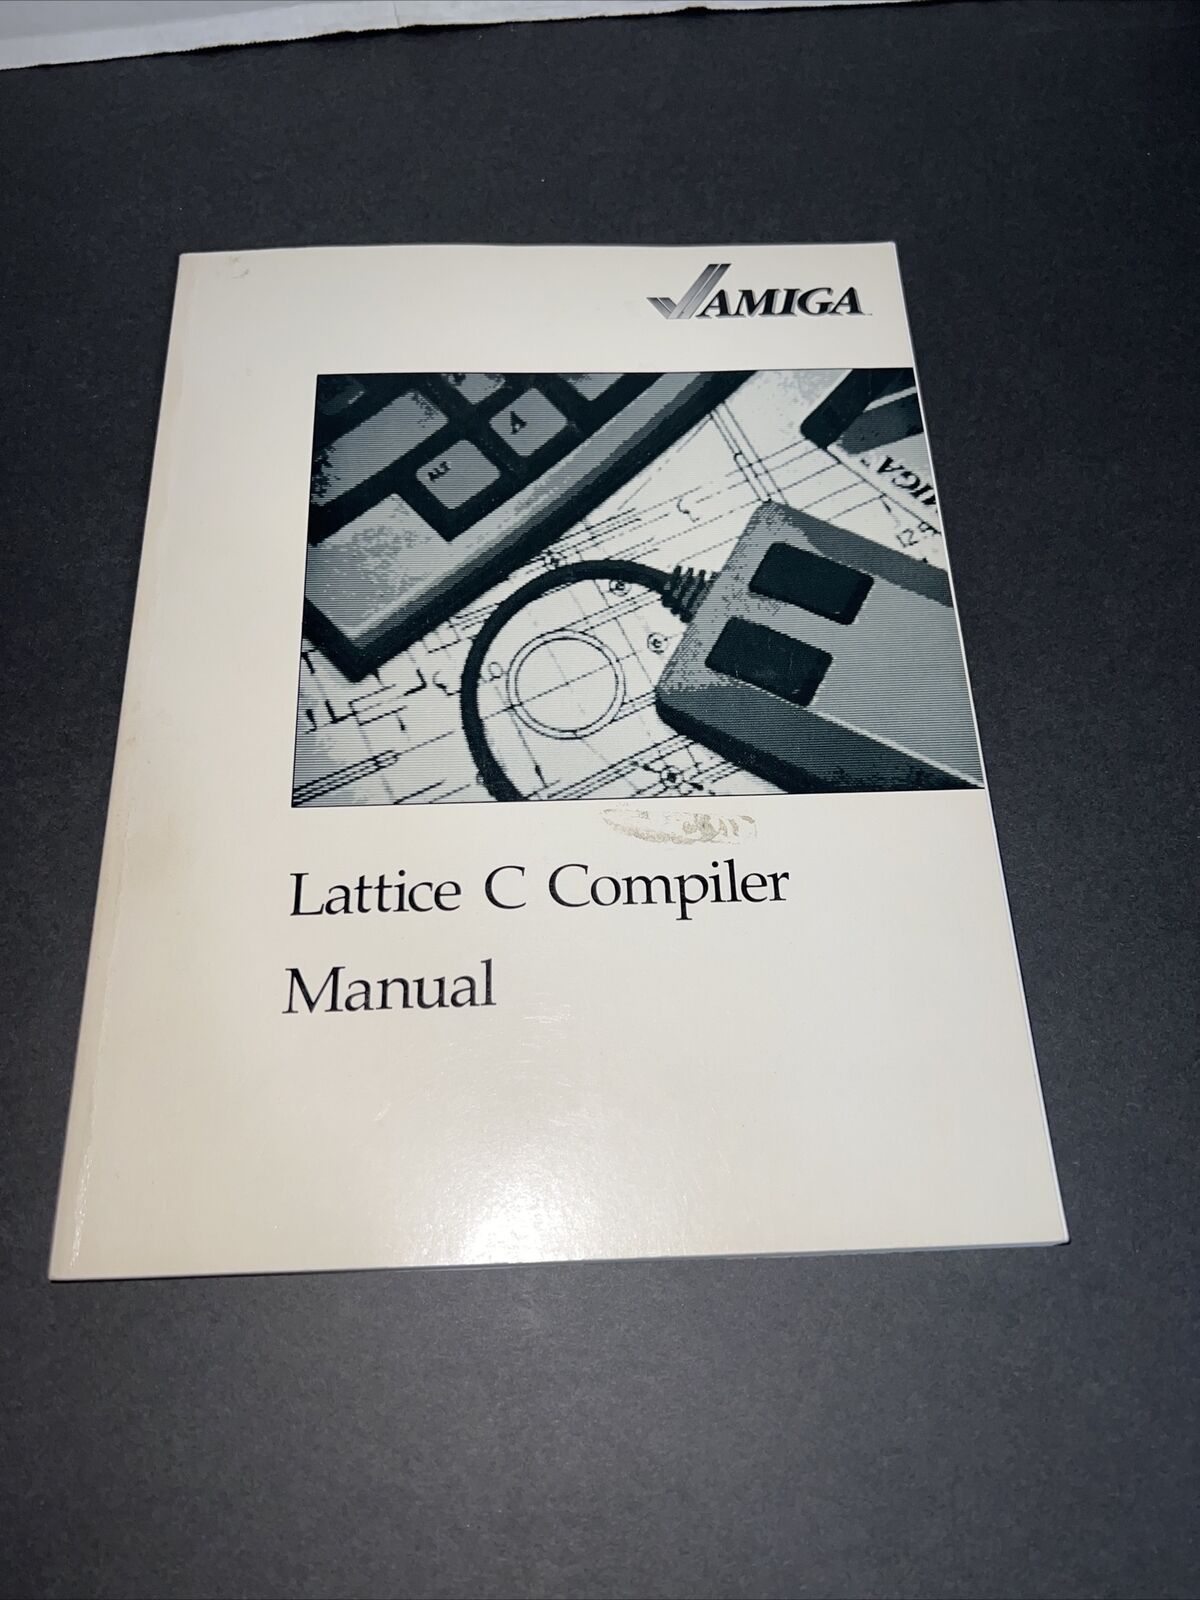 Amiga Lattice C Compiler Manual 1985